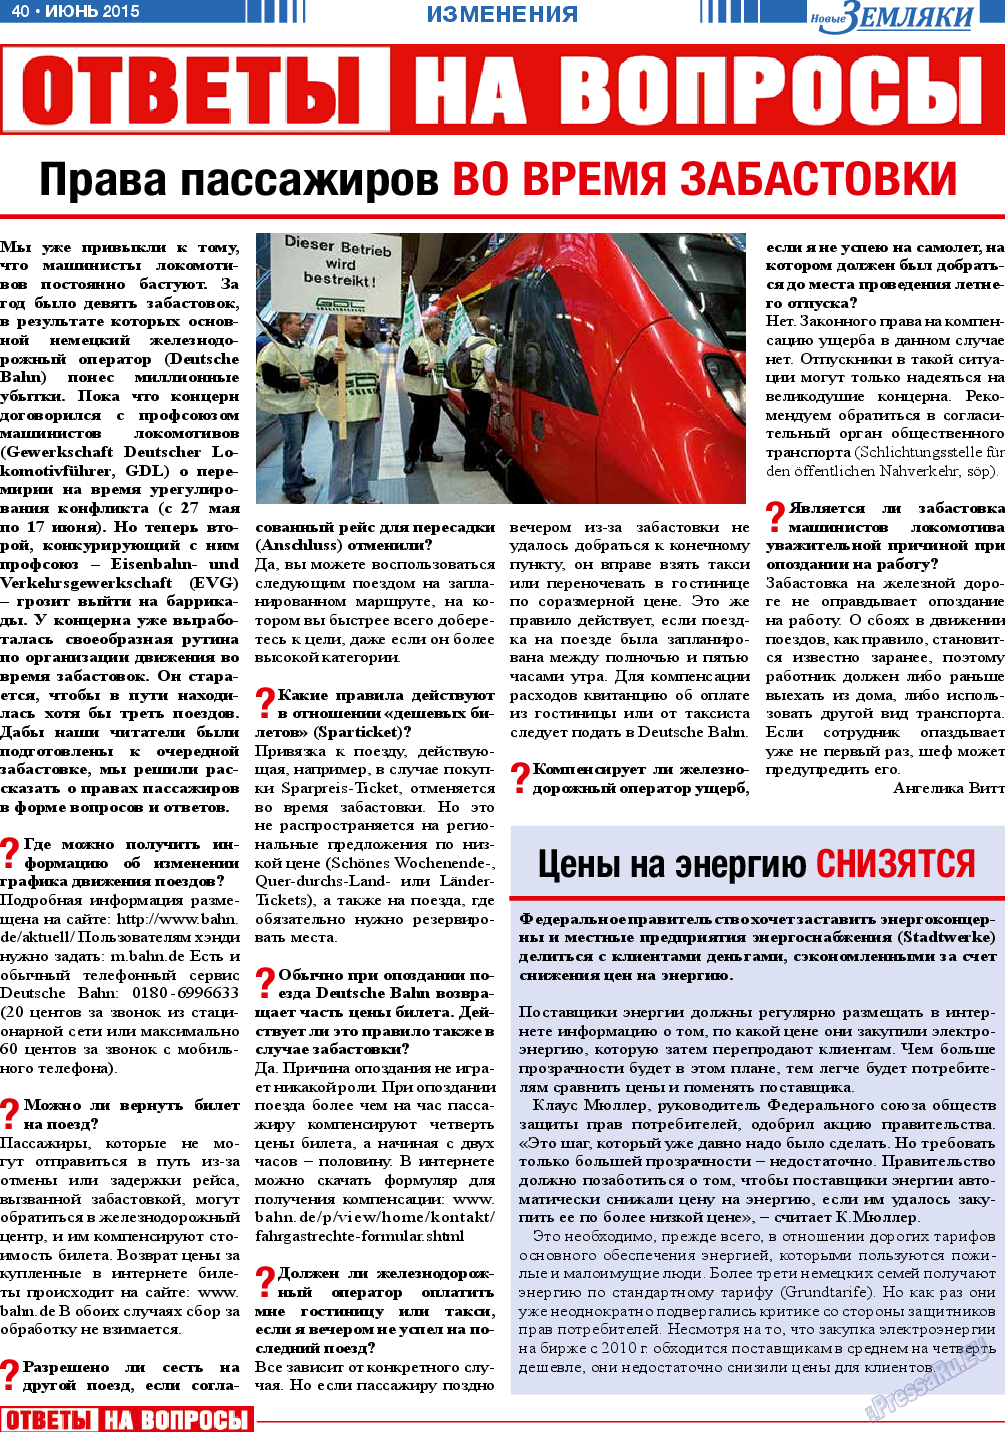 Новые Земляки (газета). 2015 год, номер 6, стр. 40